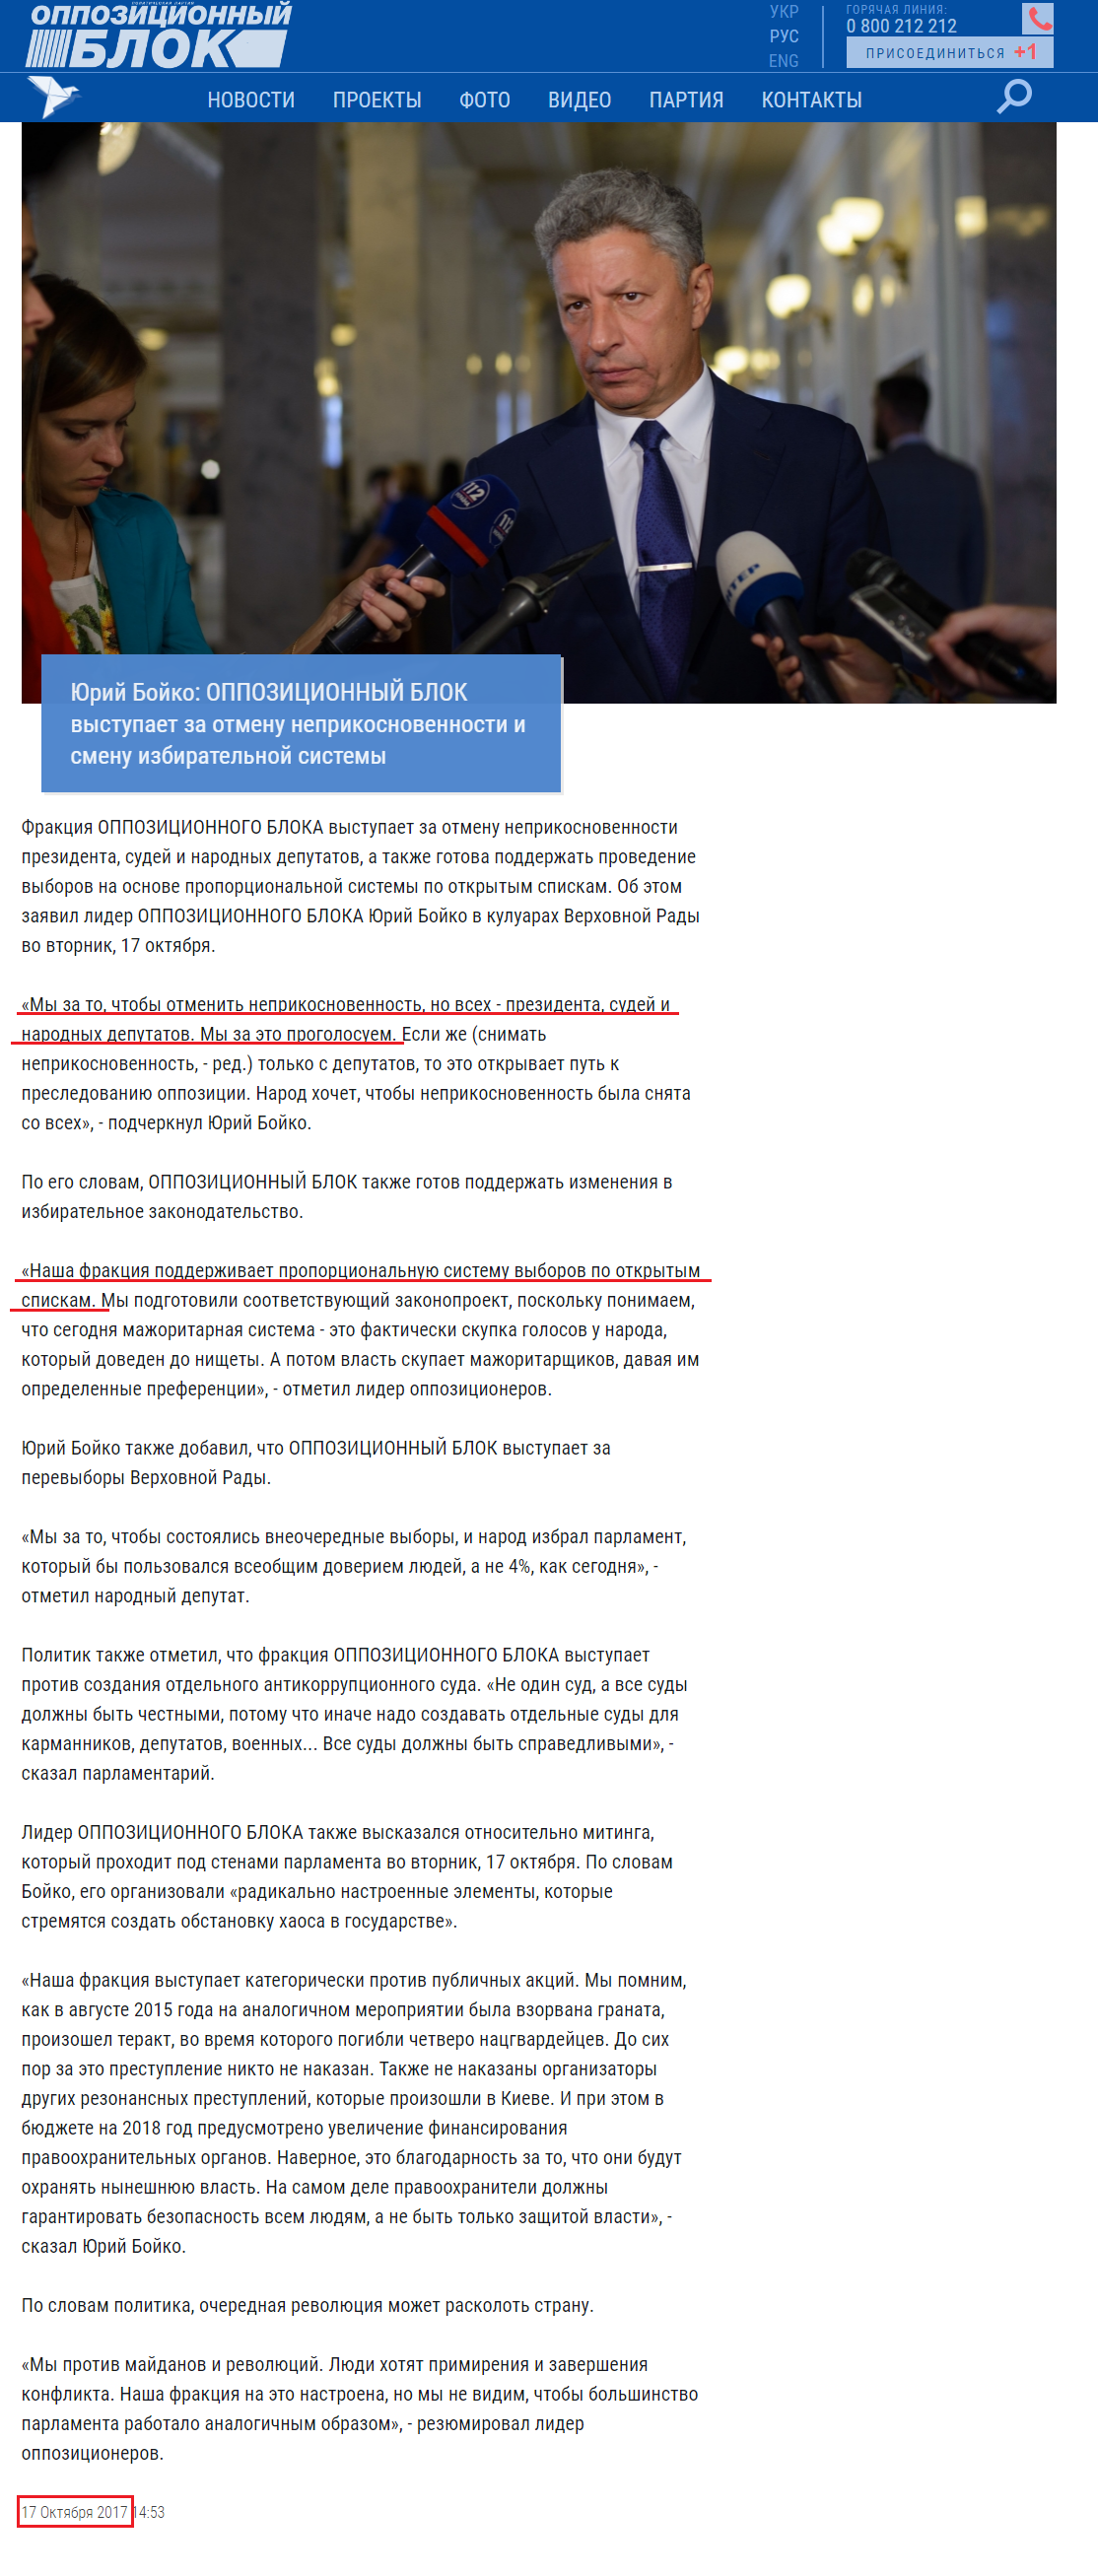 http://opposition.org.ua/news/yurij-bojko-opozicjjnijj-blok-vistupae-za-skasuvannya-nedotorkannosti-ta-zminu-viborcho-sistemi.html